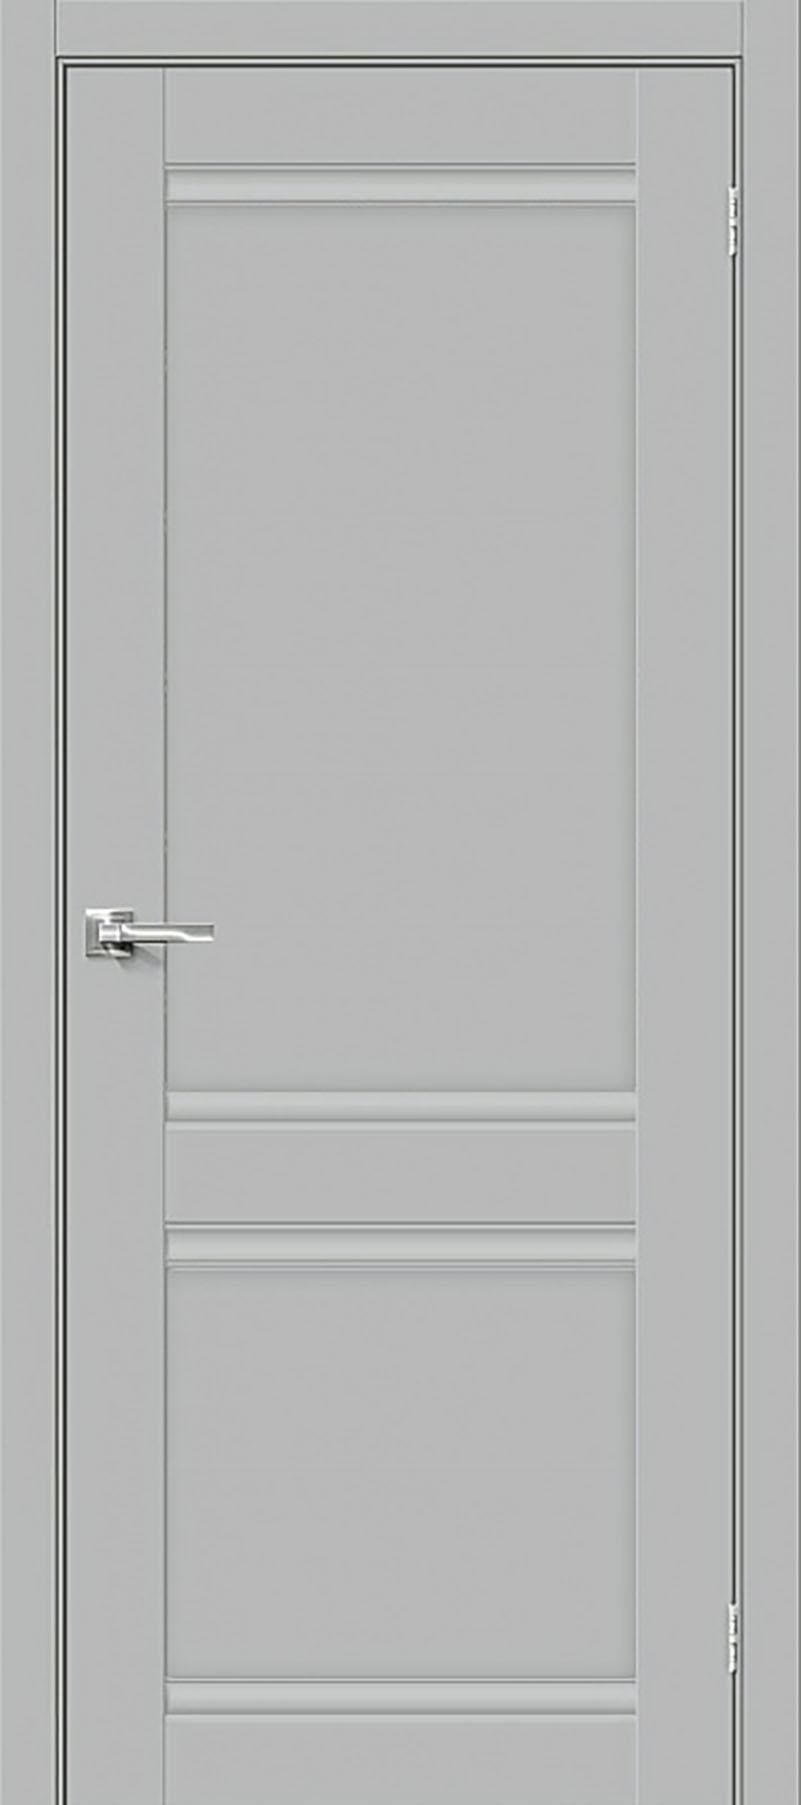 90910818 Межкомнатная дверь Парма 1211 глухая без замка и петель в комплекте 200x90см серый STLM-0420346 UBERTURE